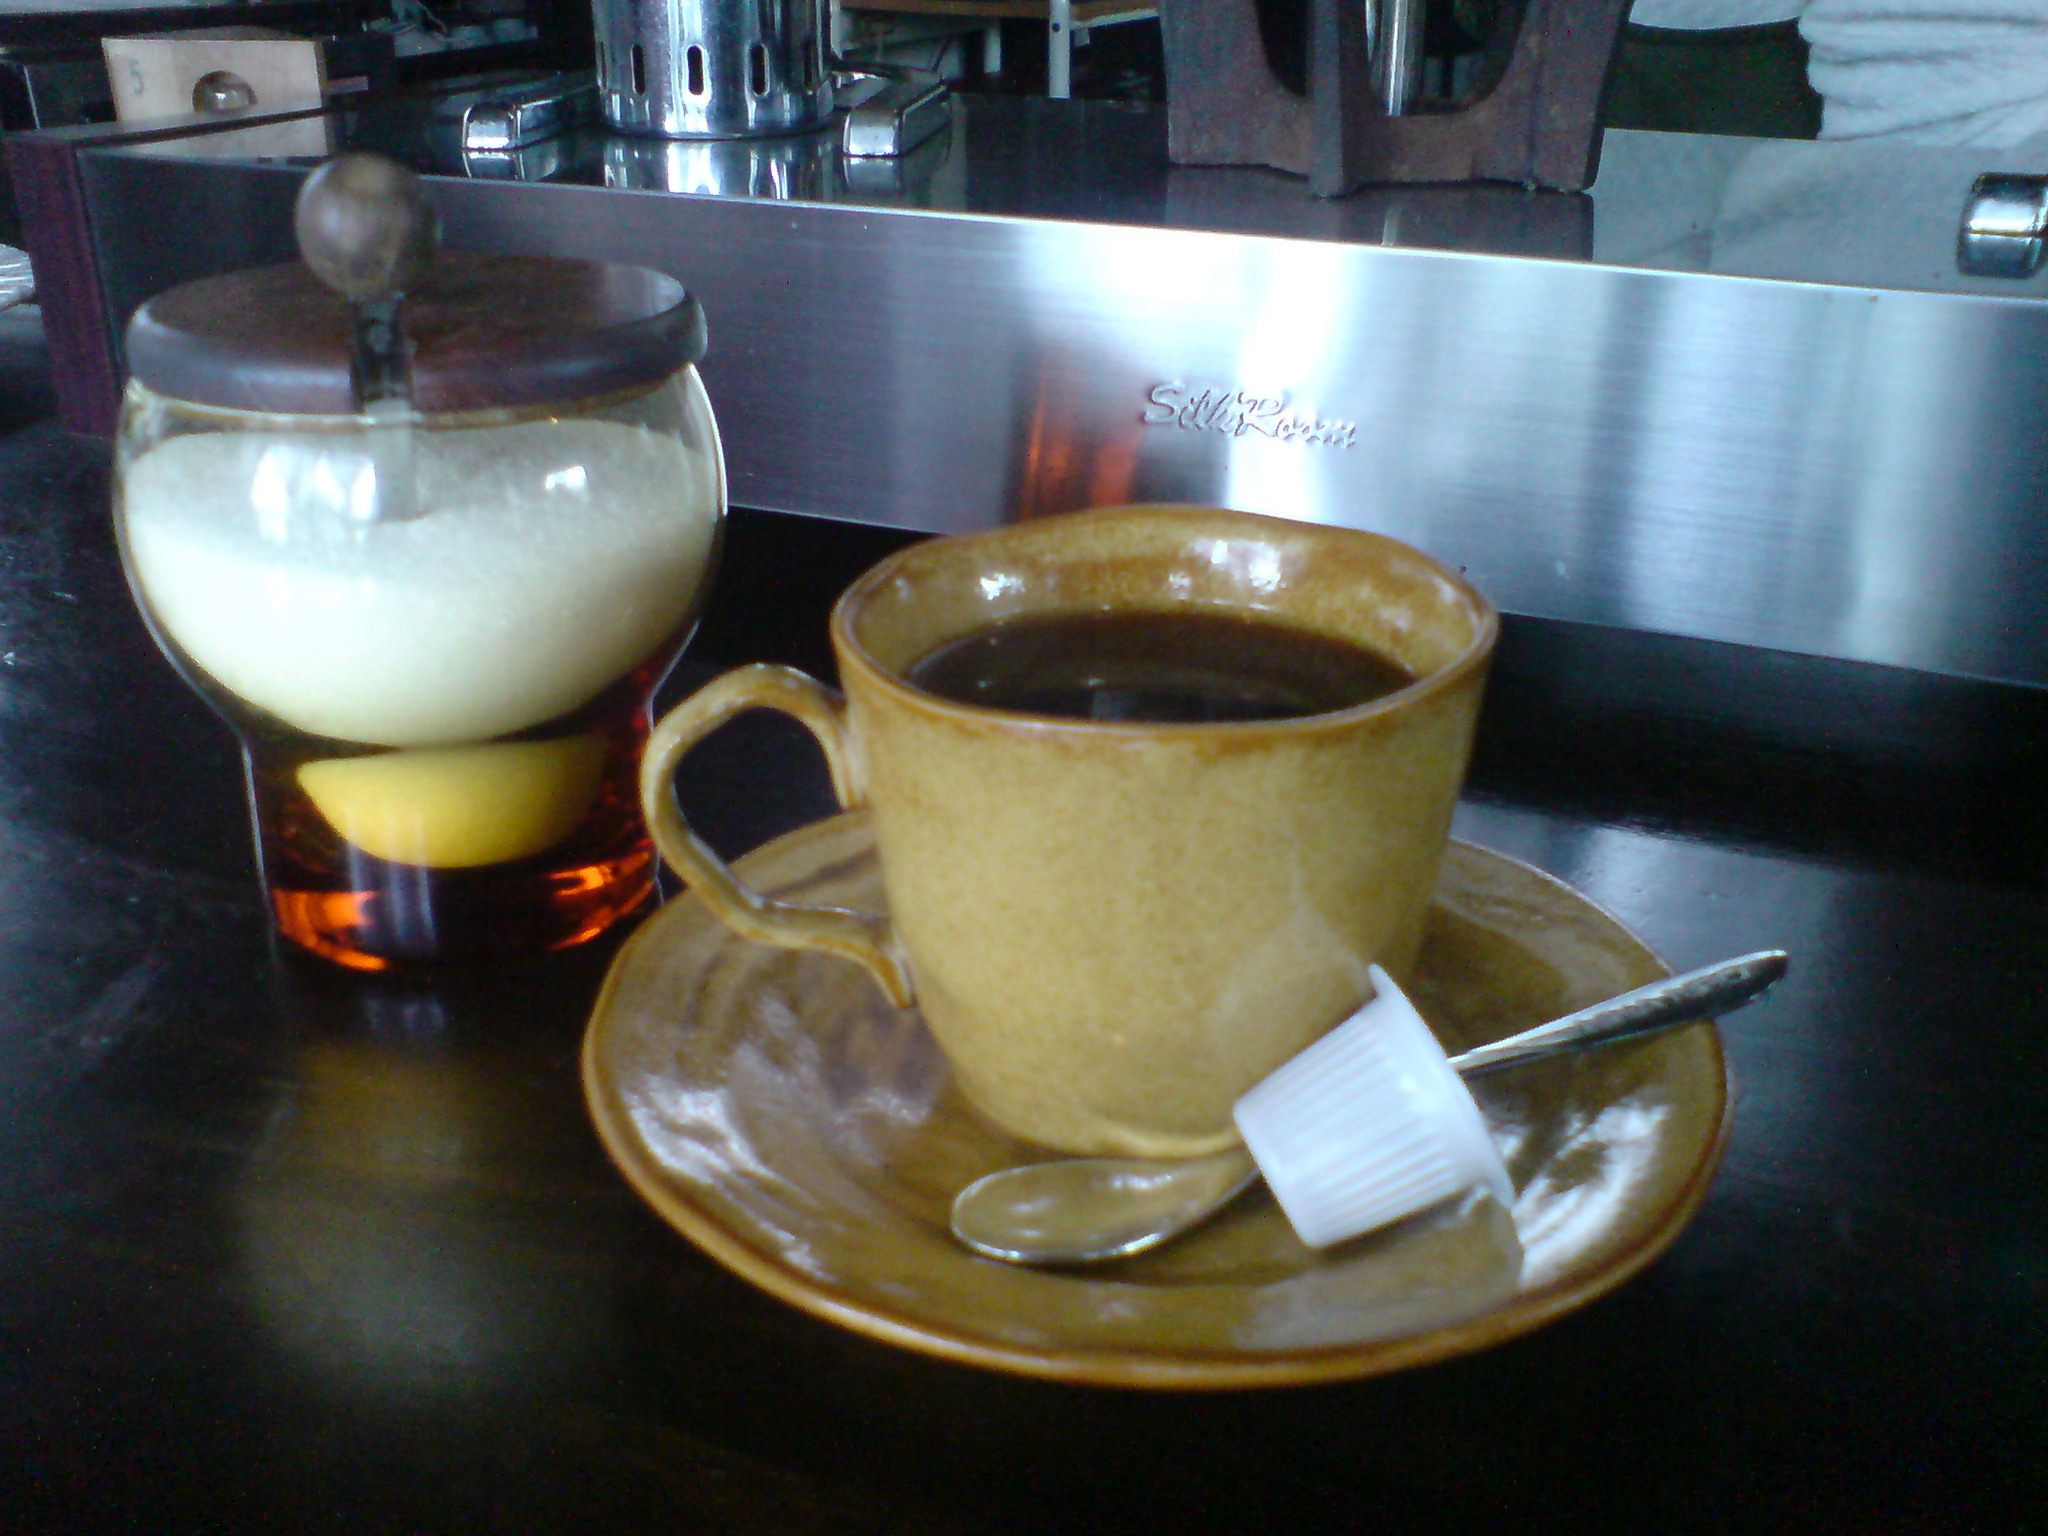 宮古島レストラン喫茶トニオのコーヒー